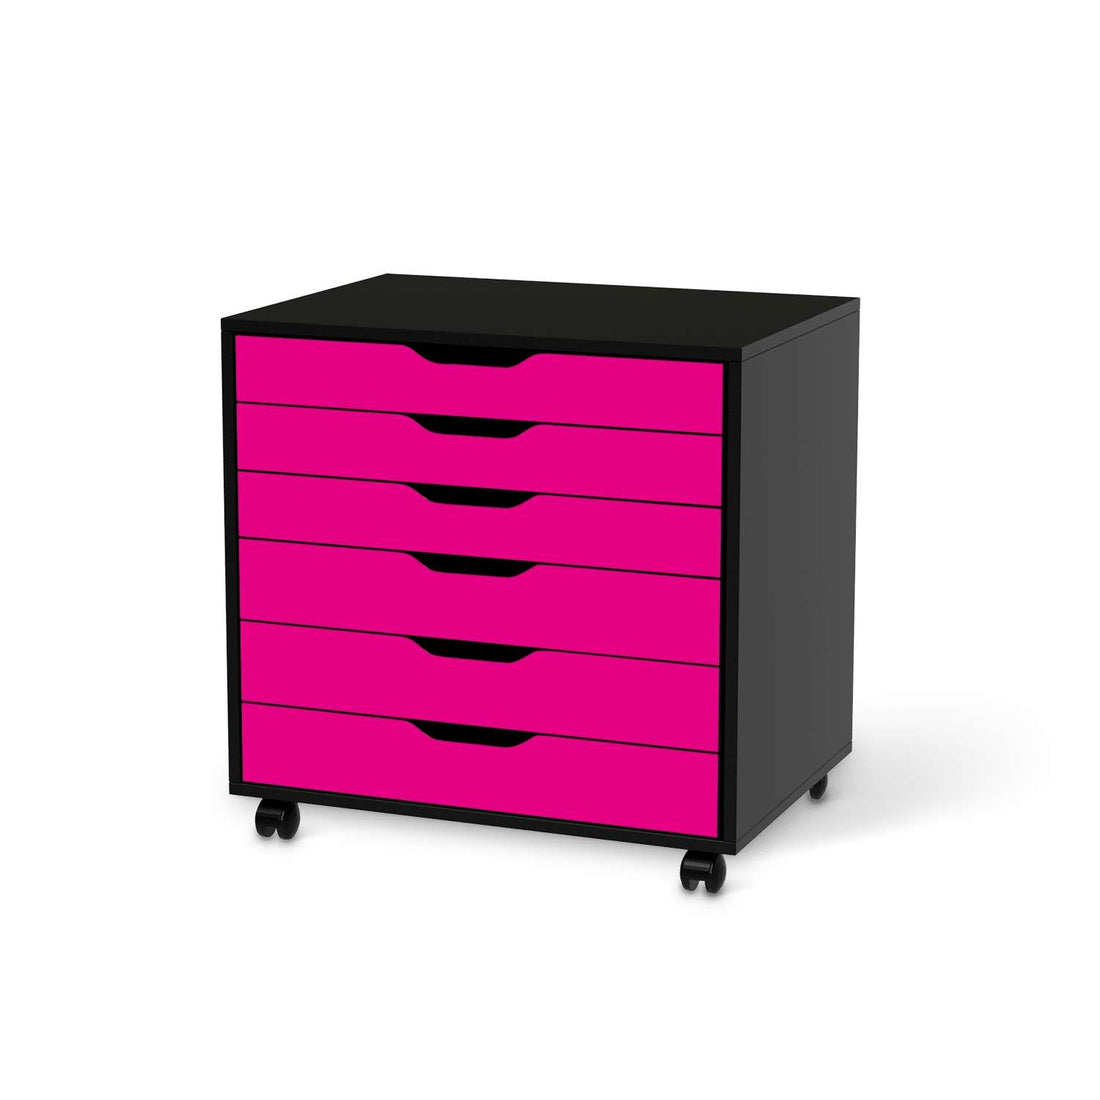 Möbelfolie Pink Dark - IKEA Alex Rollcontainer 6 Schubladen - schwarz